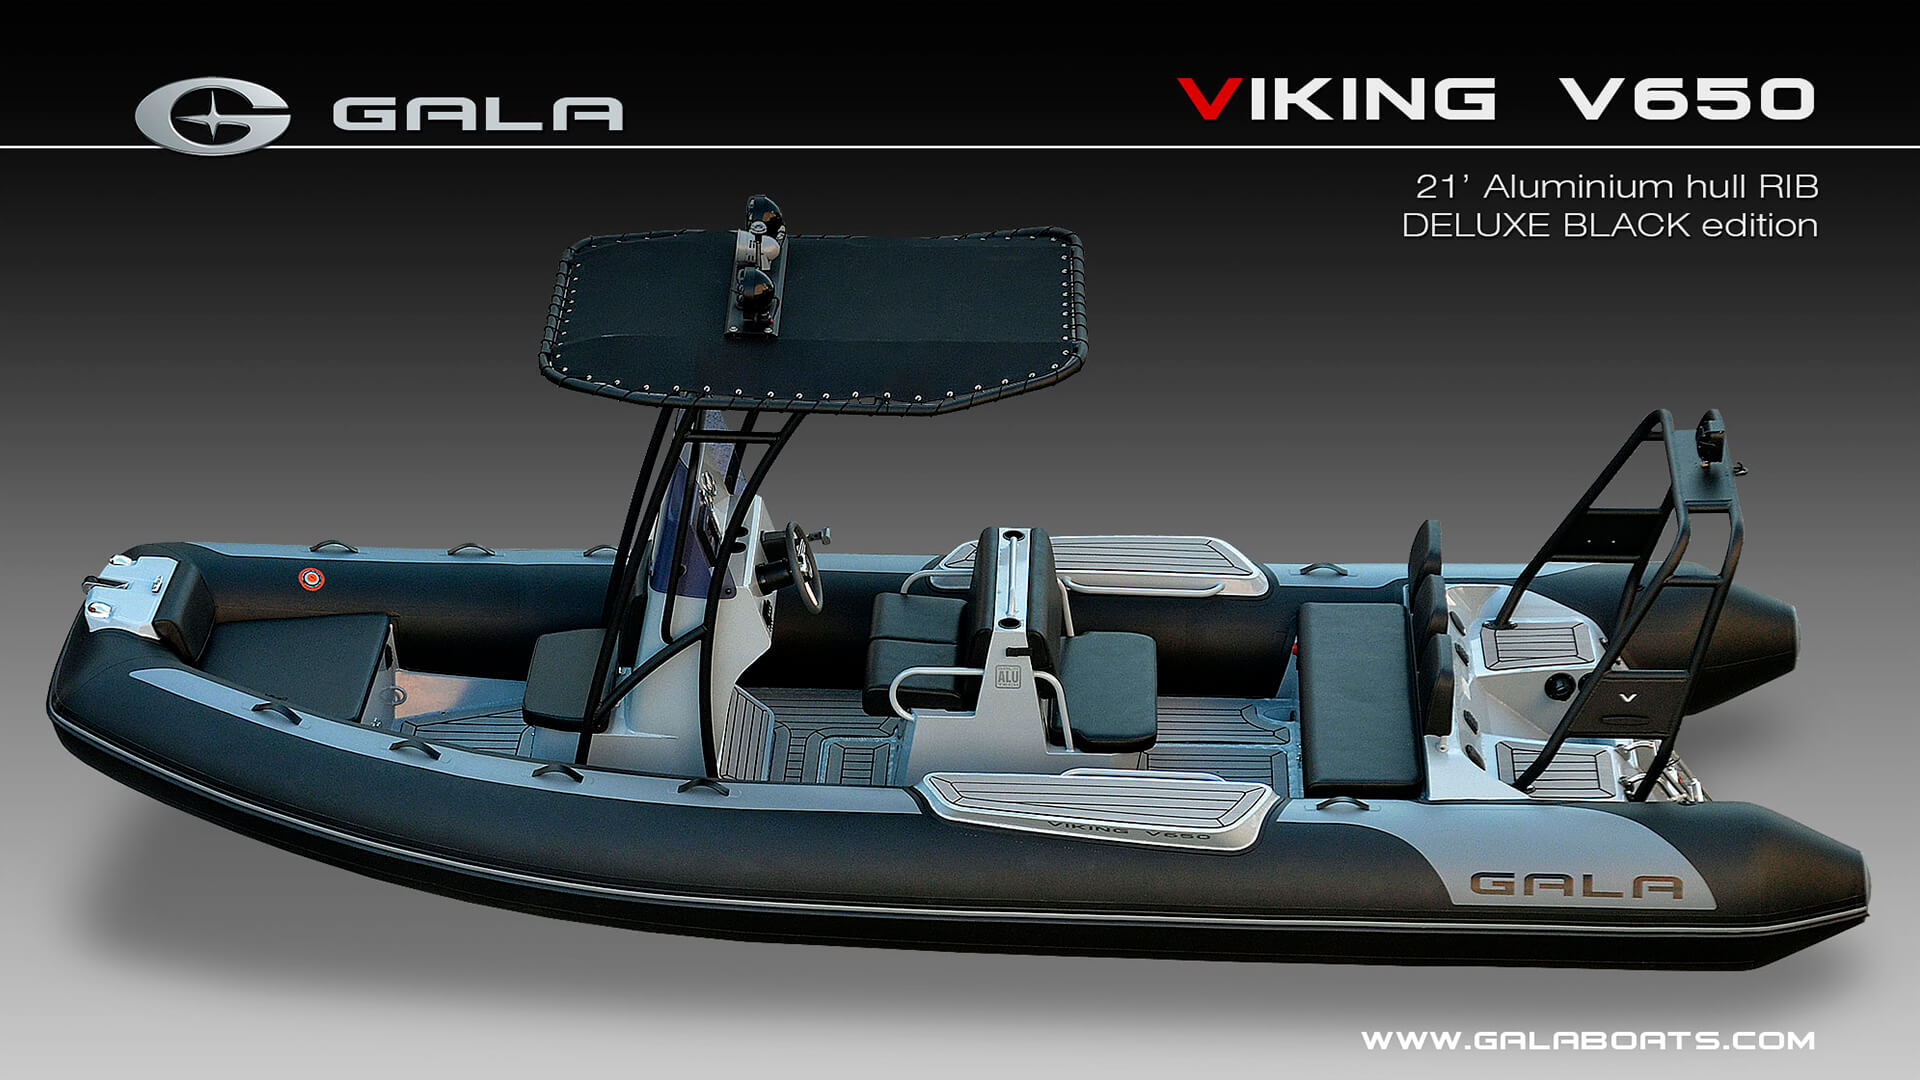 Надувная лодка с жестким алюминиевым дном GALA Viking V650, Надувная лодка с жестким дном GALA Viking V650, Надувная лодка с жестким дном GALA V650, Надувная лодка GALA V650, Надувная лодка GALA V650, GALA V650, лодка с жестким дном, алюминиевый риб, алюминиевый RIB, RIB